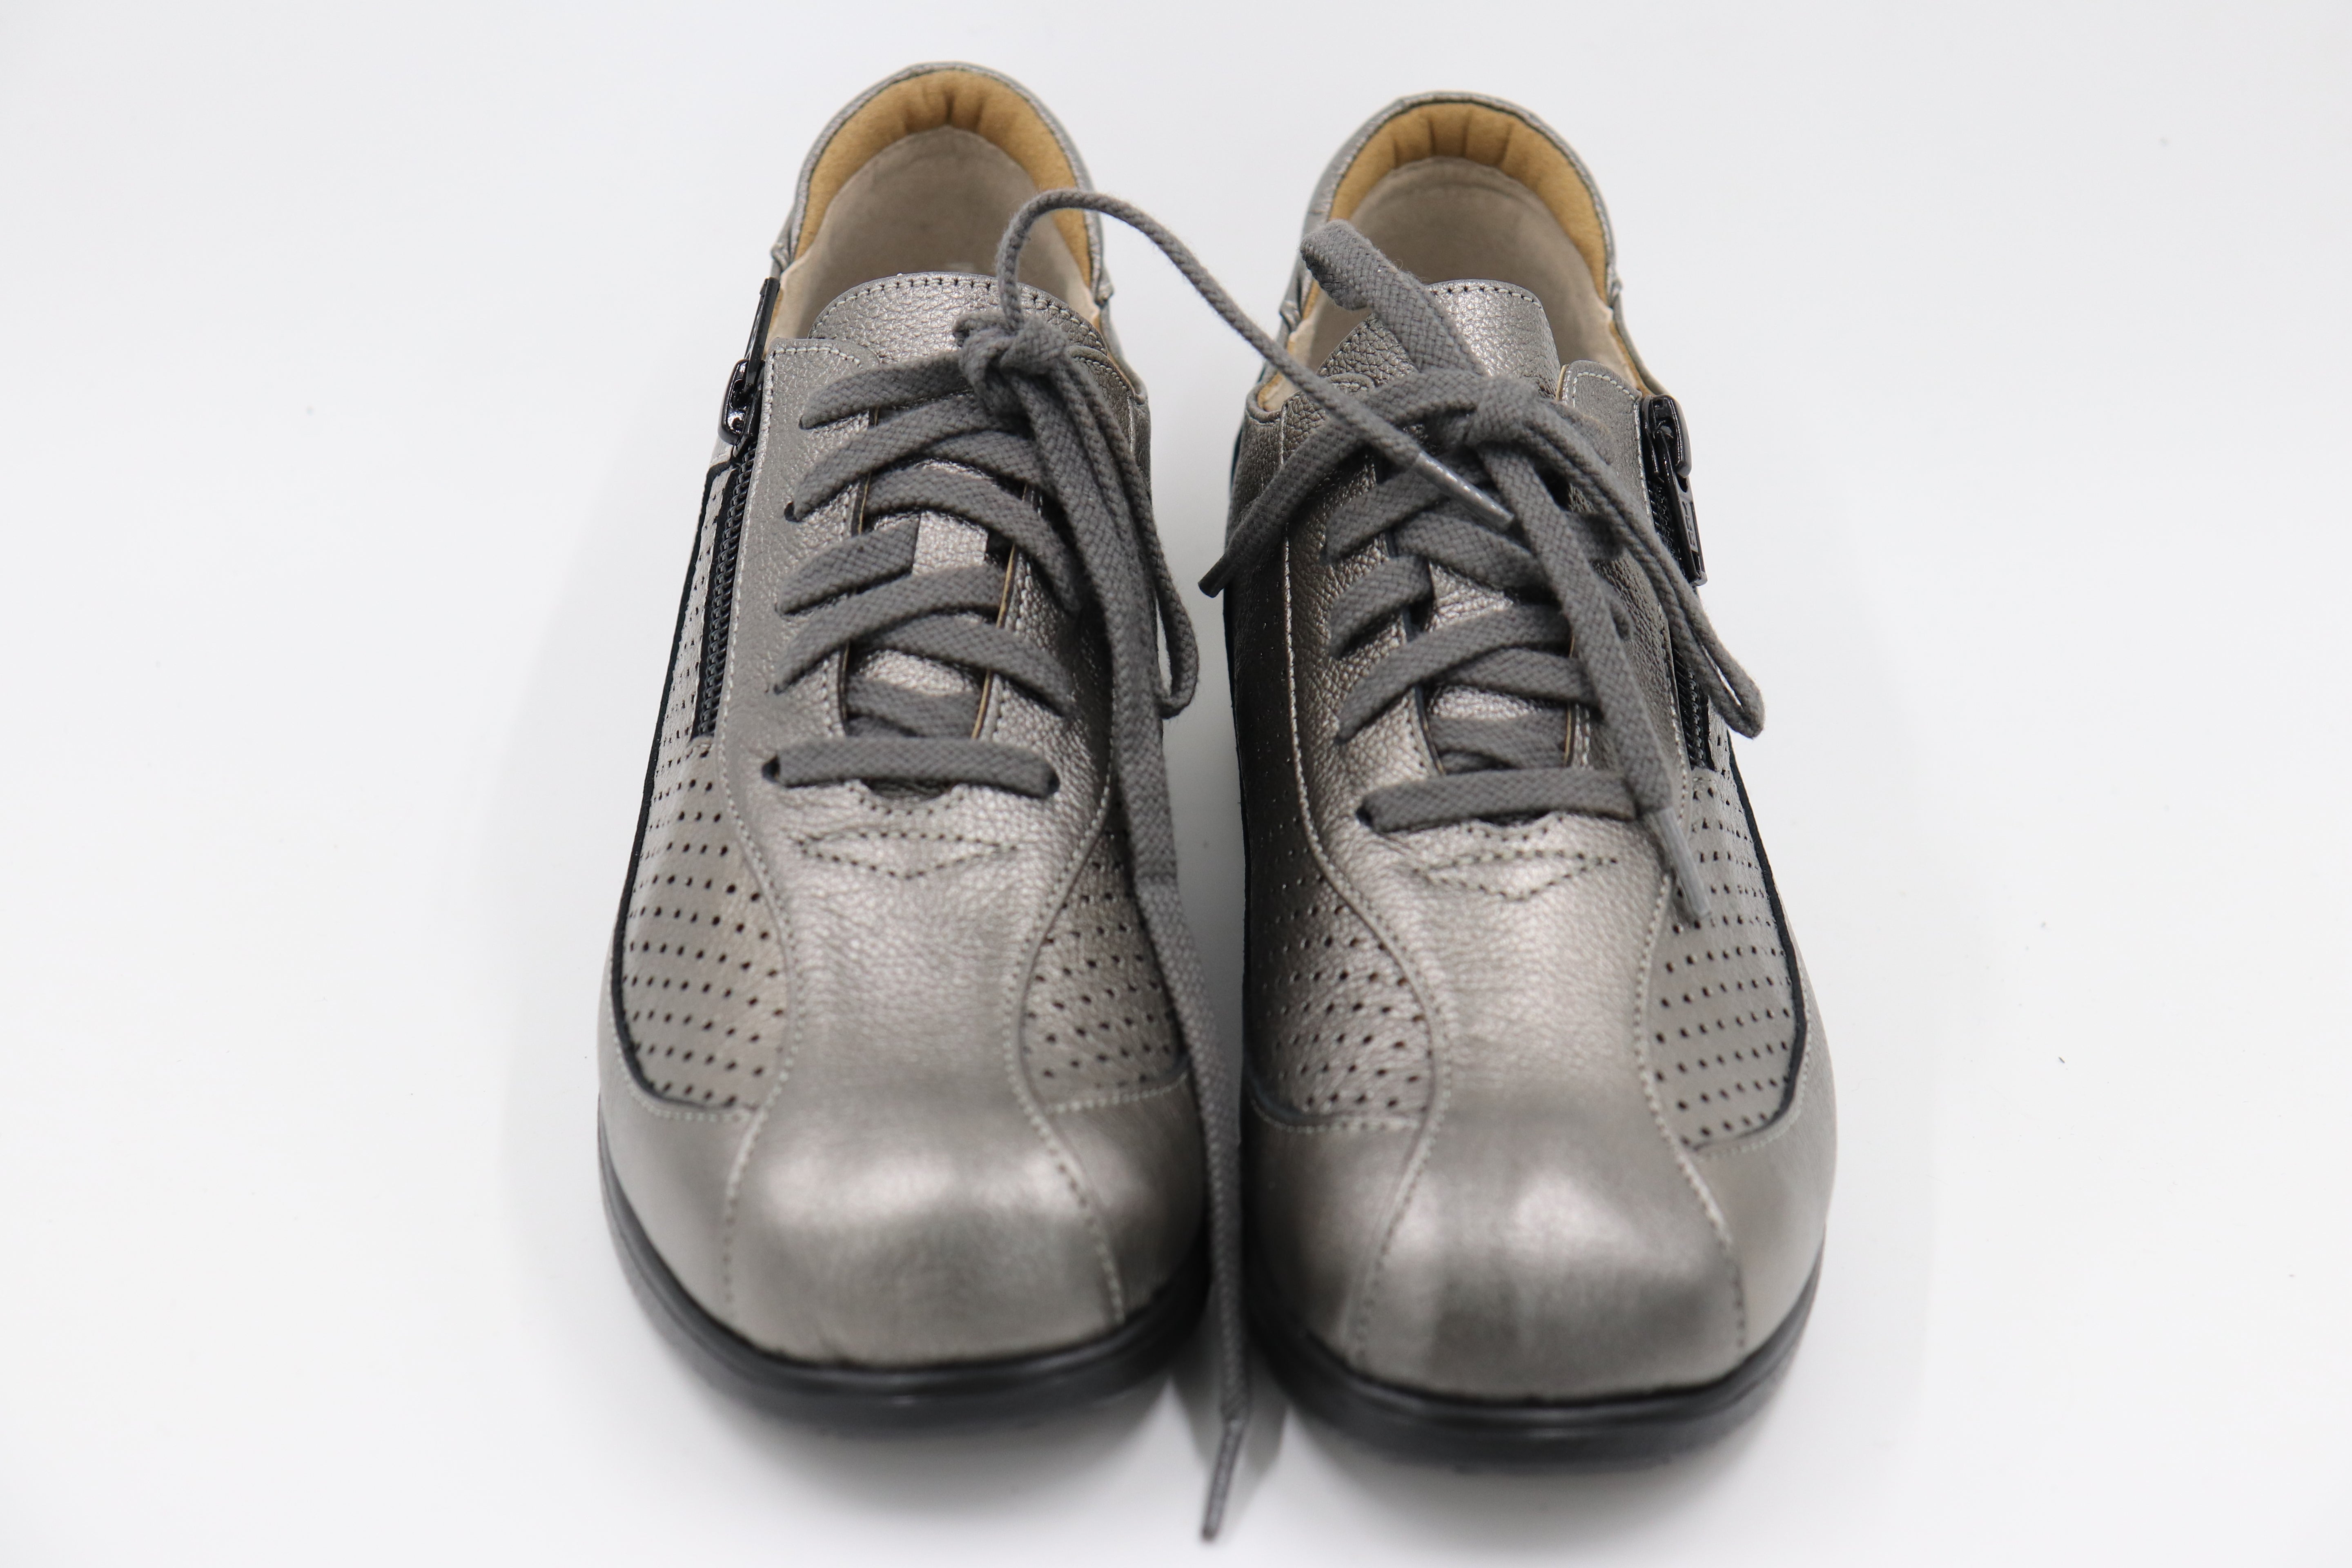 ウォーキングシューズ コンフォート  カジュアル レディース 靴  紐靴  4E 日本製 本革 内ファスナー 脱ぎ履きしやすい クッション性 お出かけ パンチング 軽量シューズ No.1518